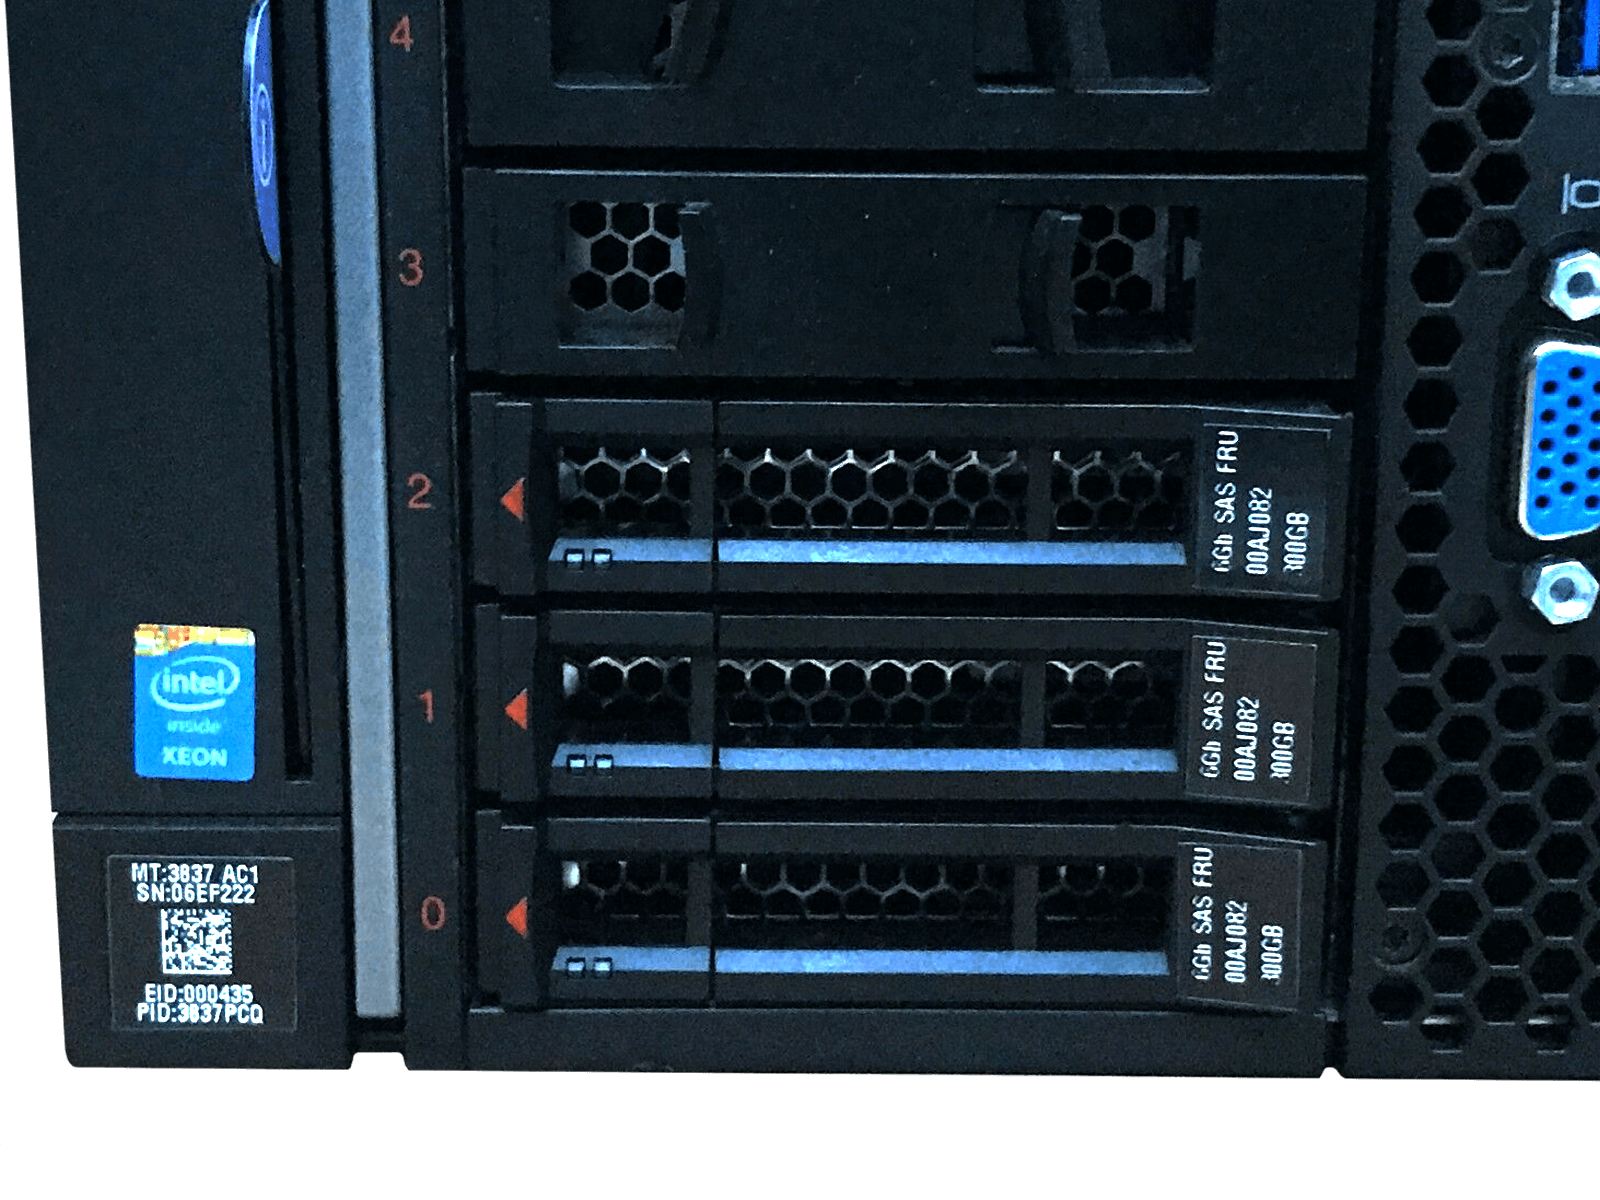 IBM x3850 X6 Server 4x Xeon E7-8880 v3 1024GB DDR4 RAM 3x 300GB 15K 4x 1400W PSU